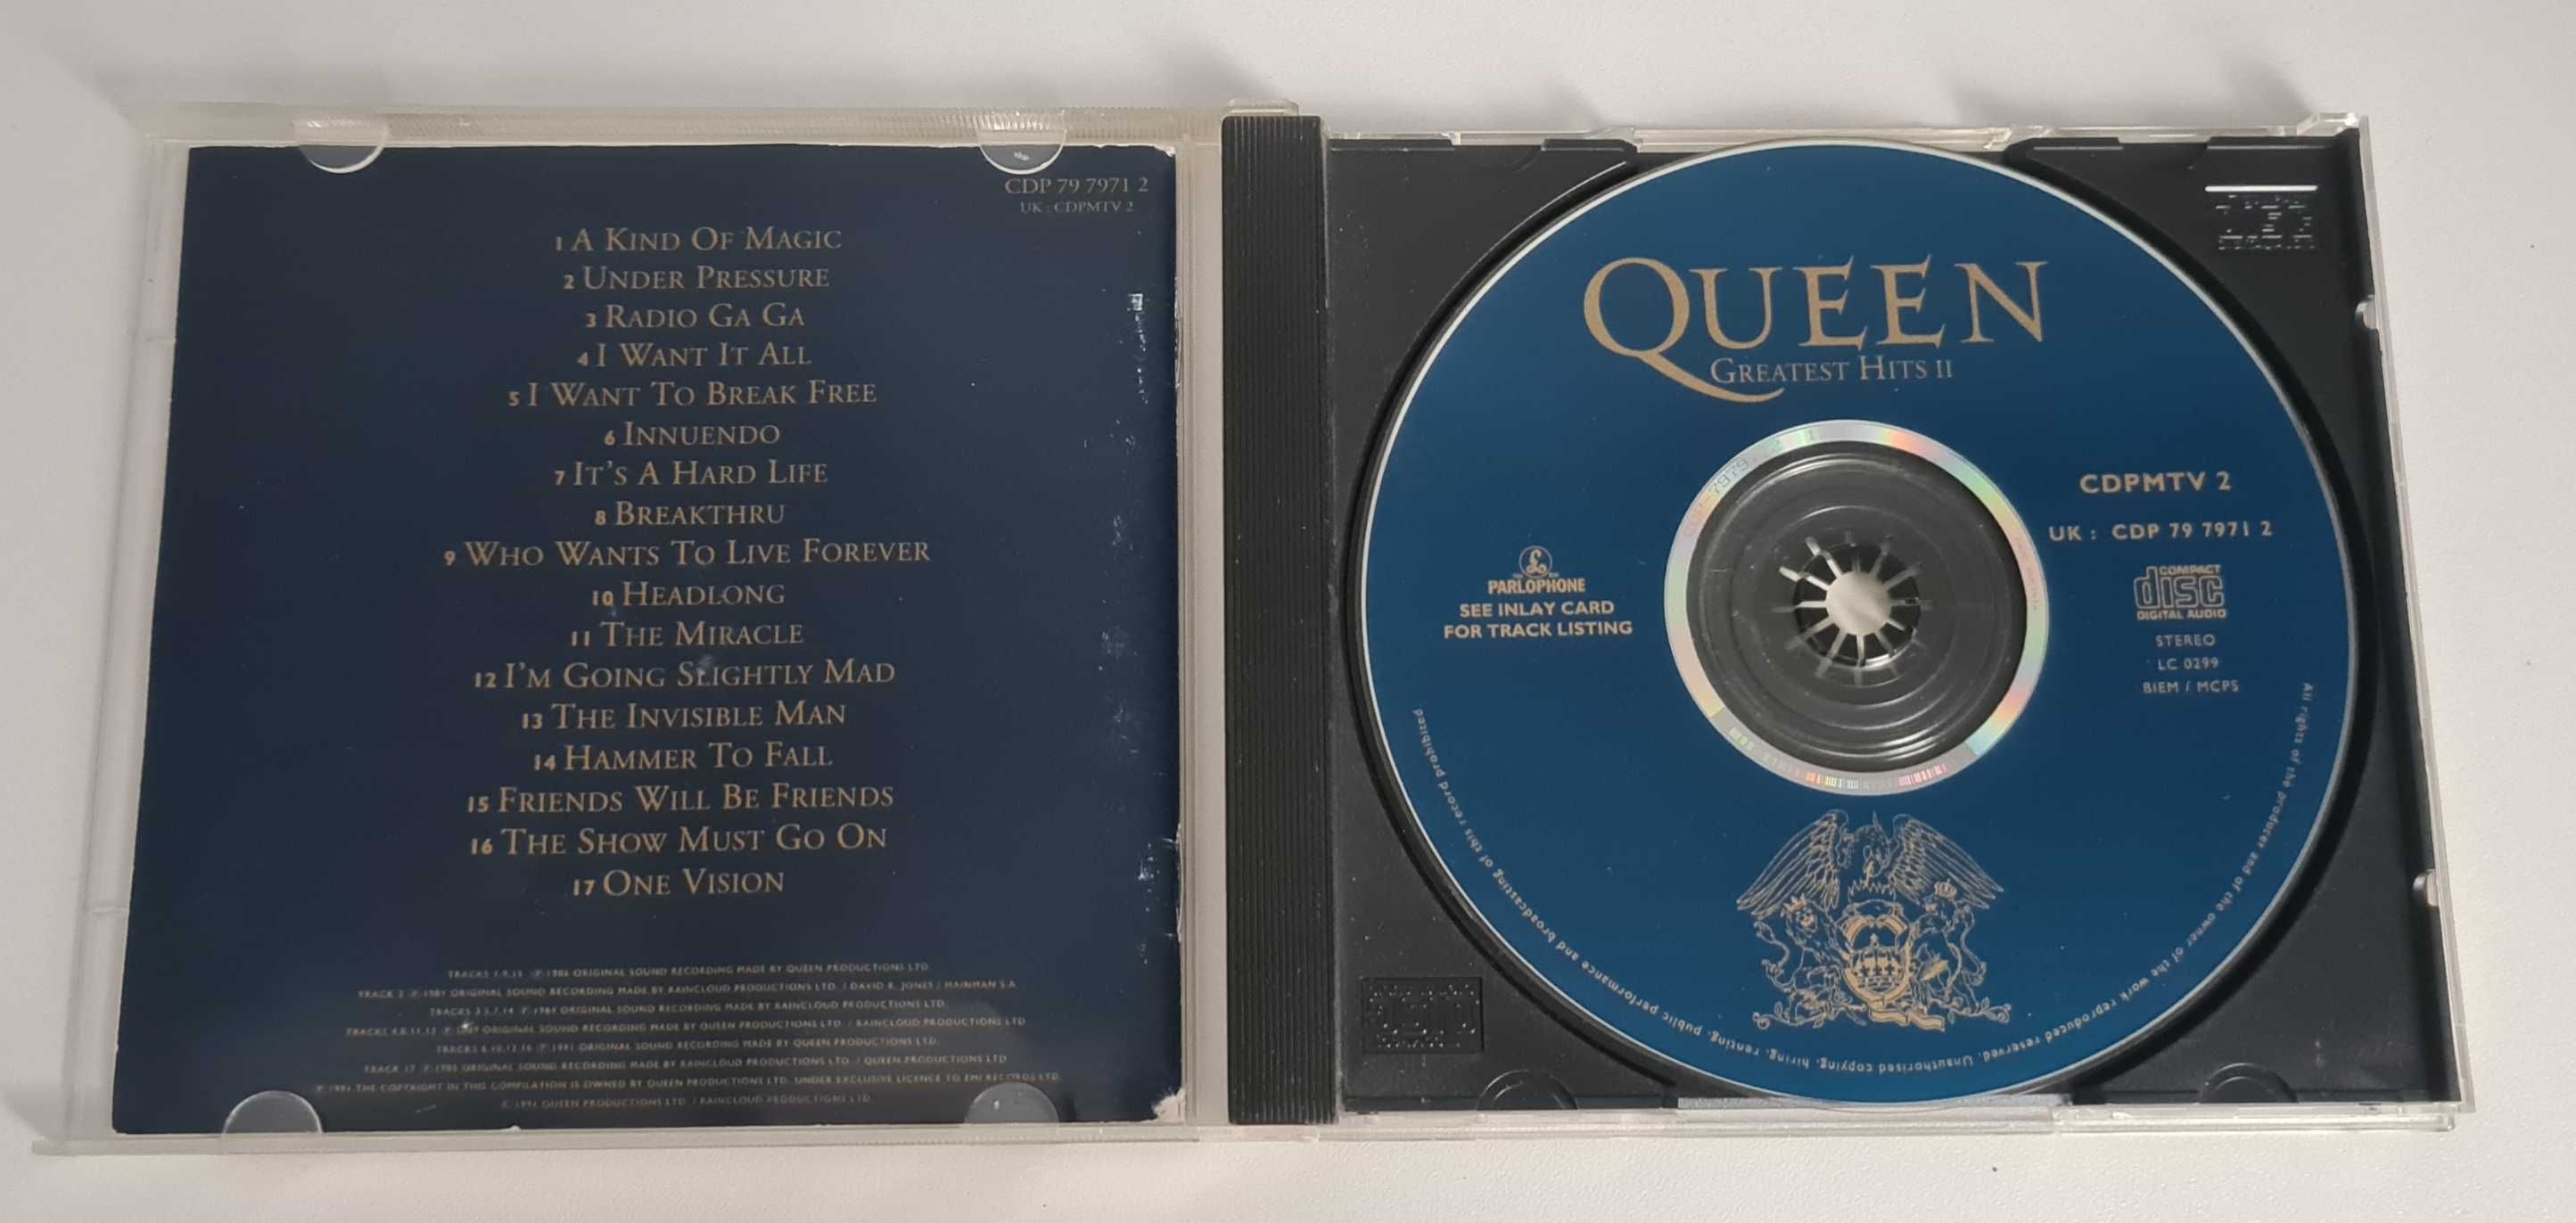 QUEEN Greatest Hits II CD